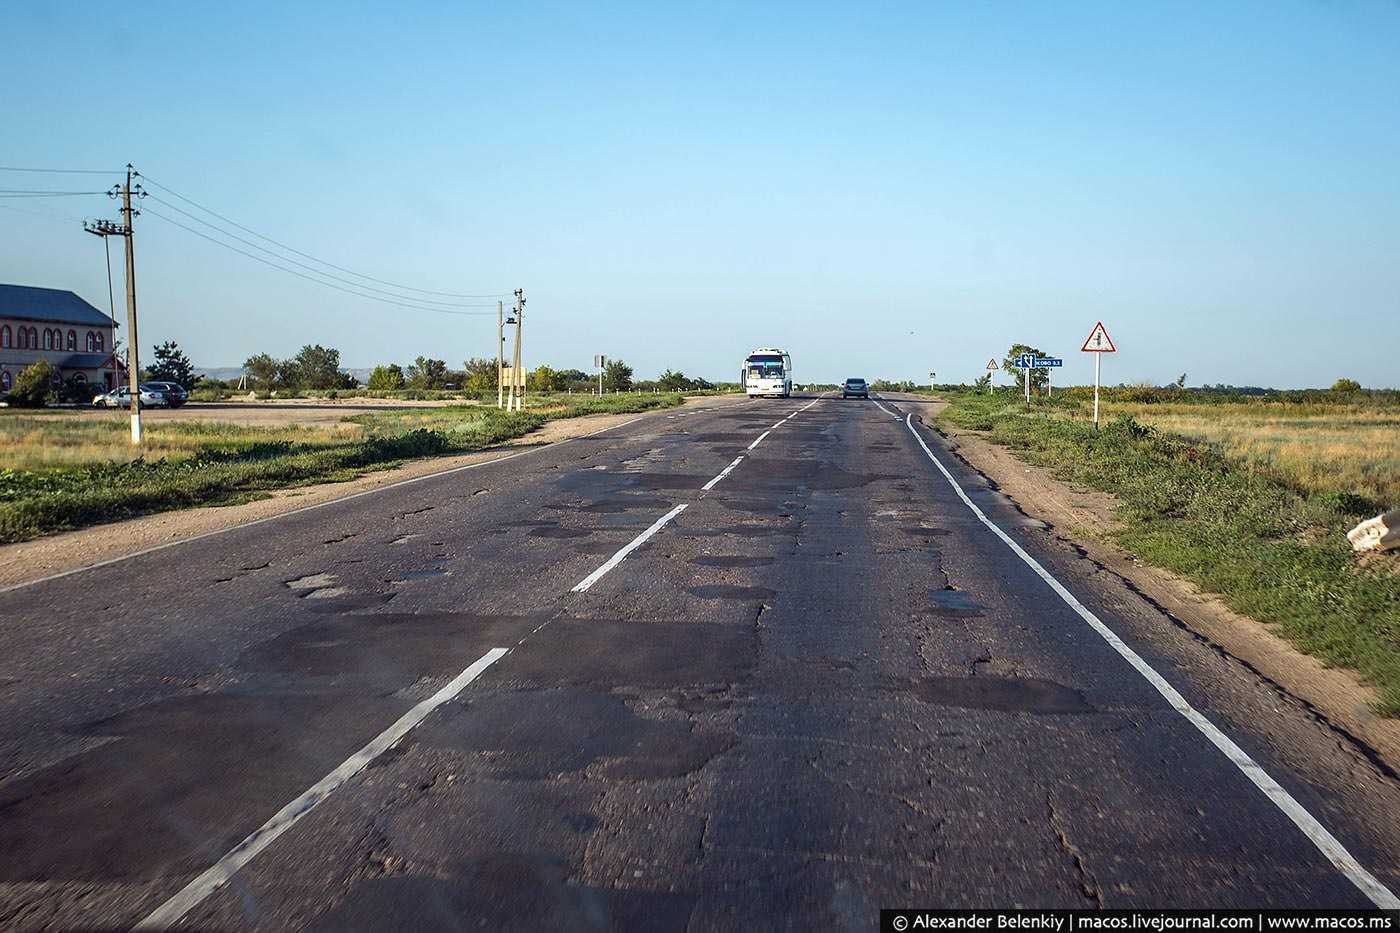 Качество автомобильных дорог в некоторых регионах России постепенно улучшается Однако остаются и такие части страны, в которых состояние данной инфраструктуры является большой проблемой